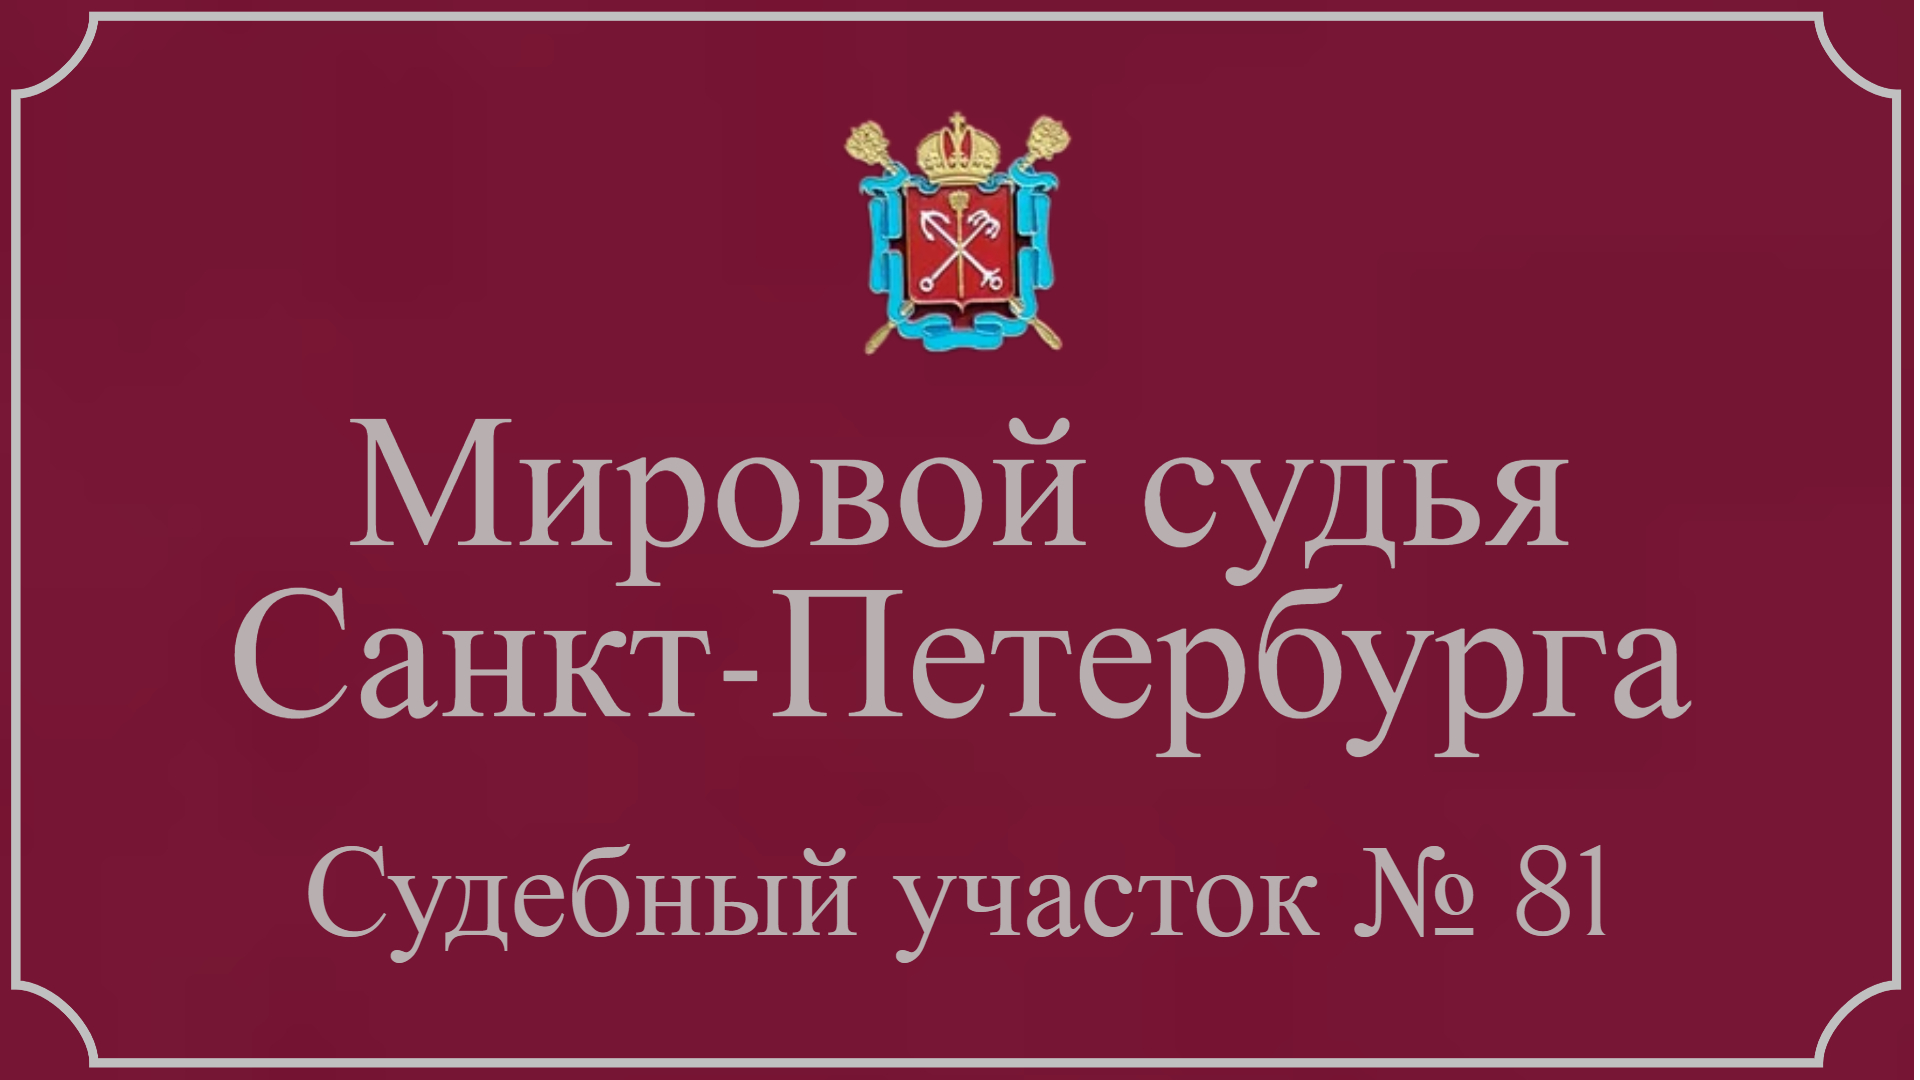 Информация по 81 судебному участку в Санкт-Петербурге.